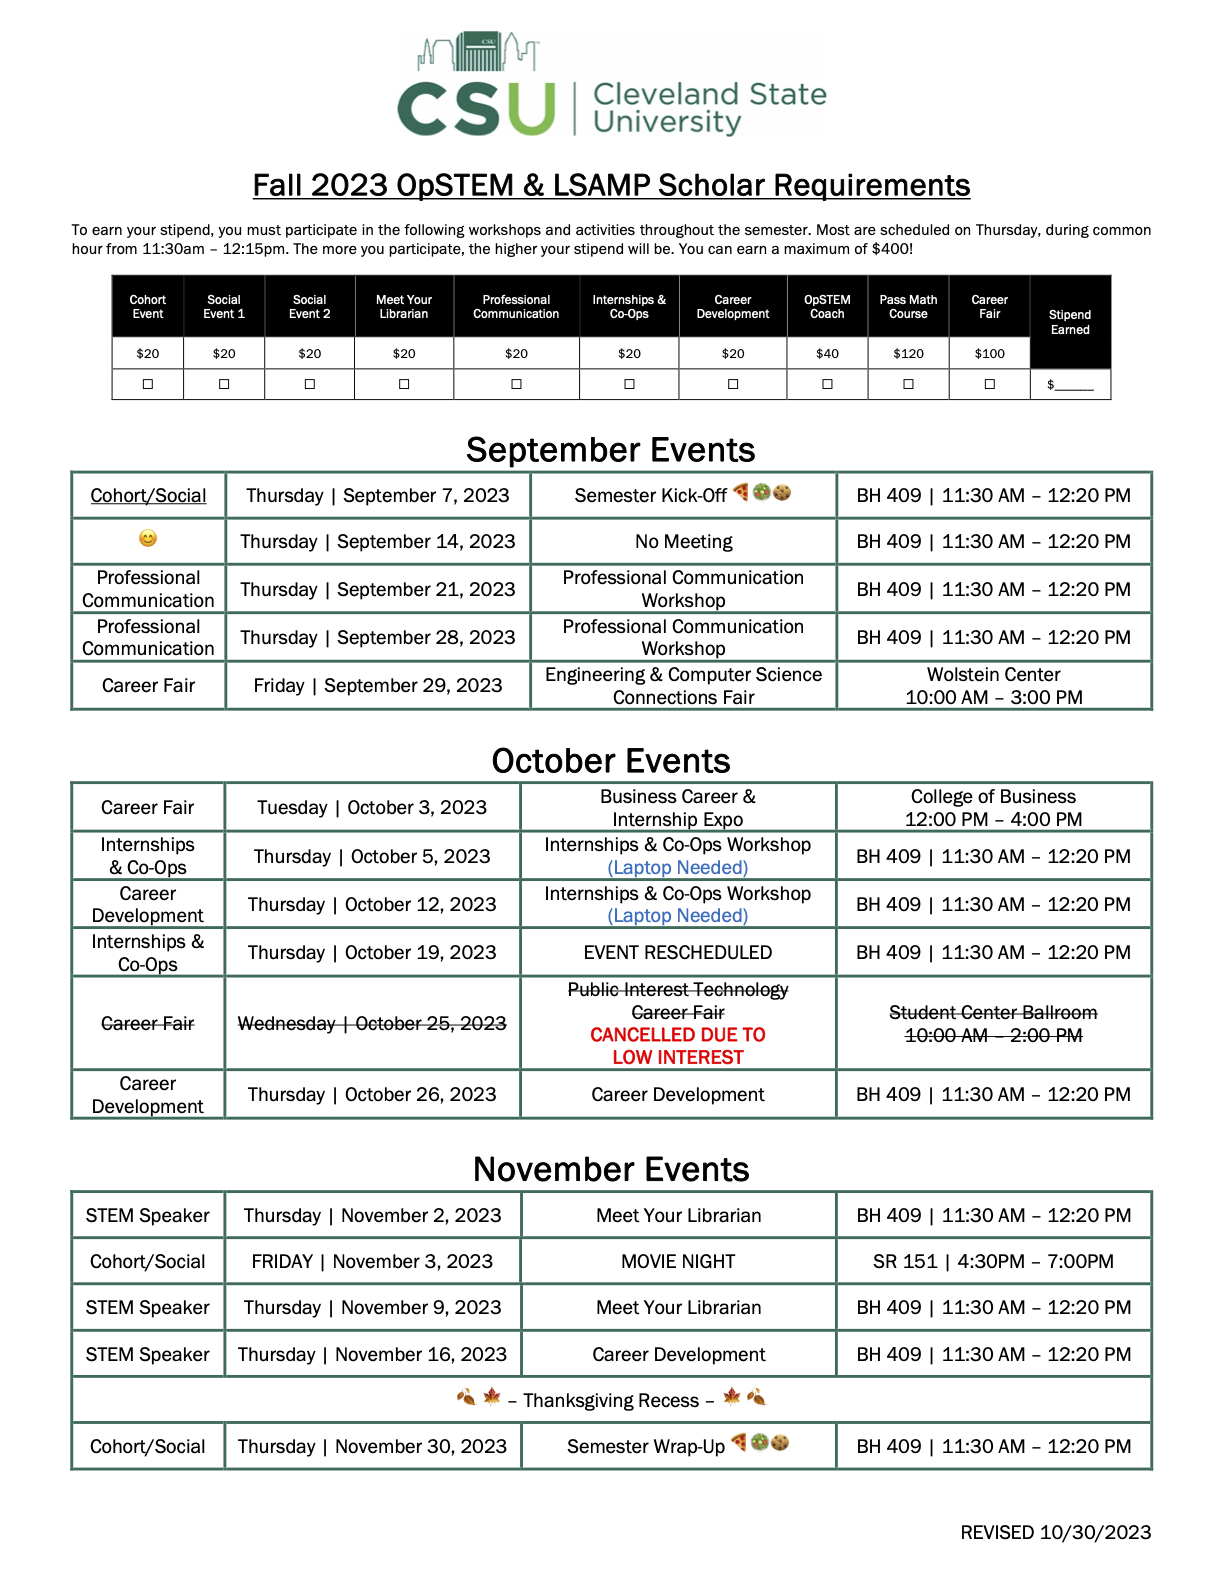 FA23 Scholar Requirement Calendar